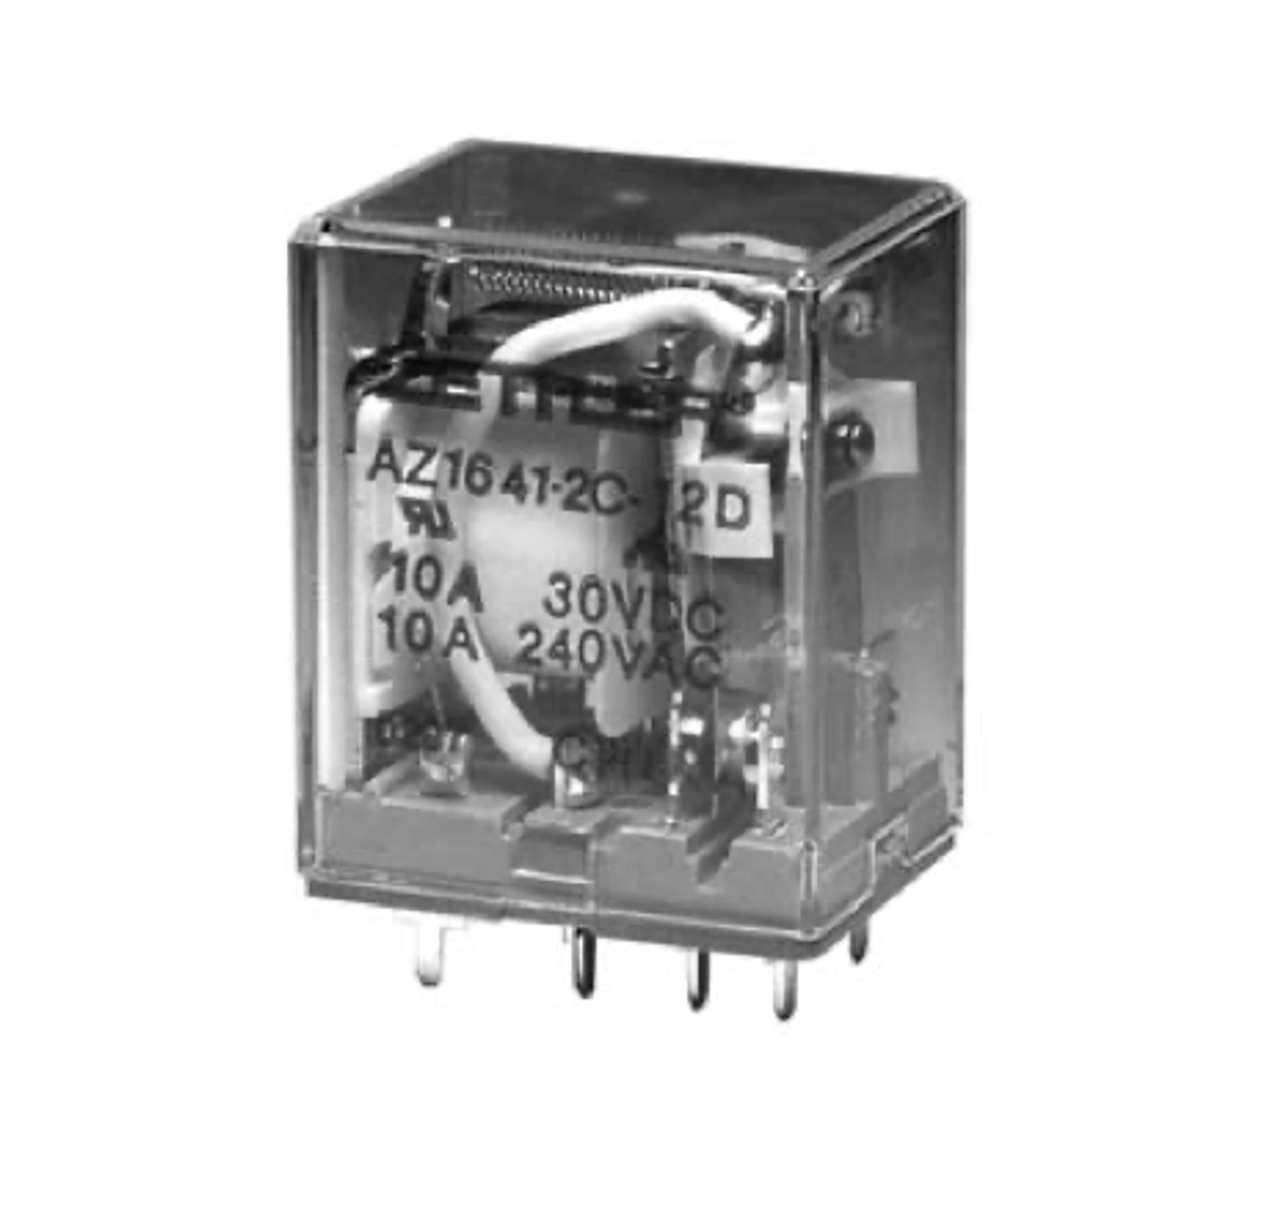 American Zettler AZ1641-2C-12A Power Relay